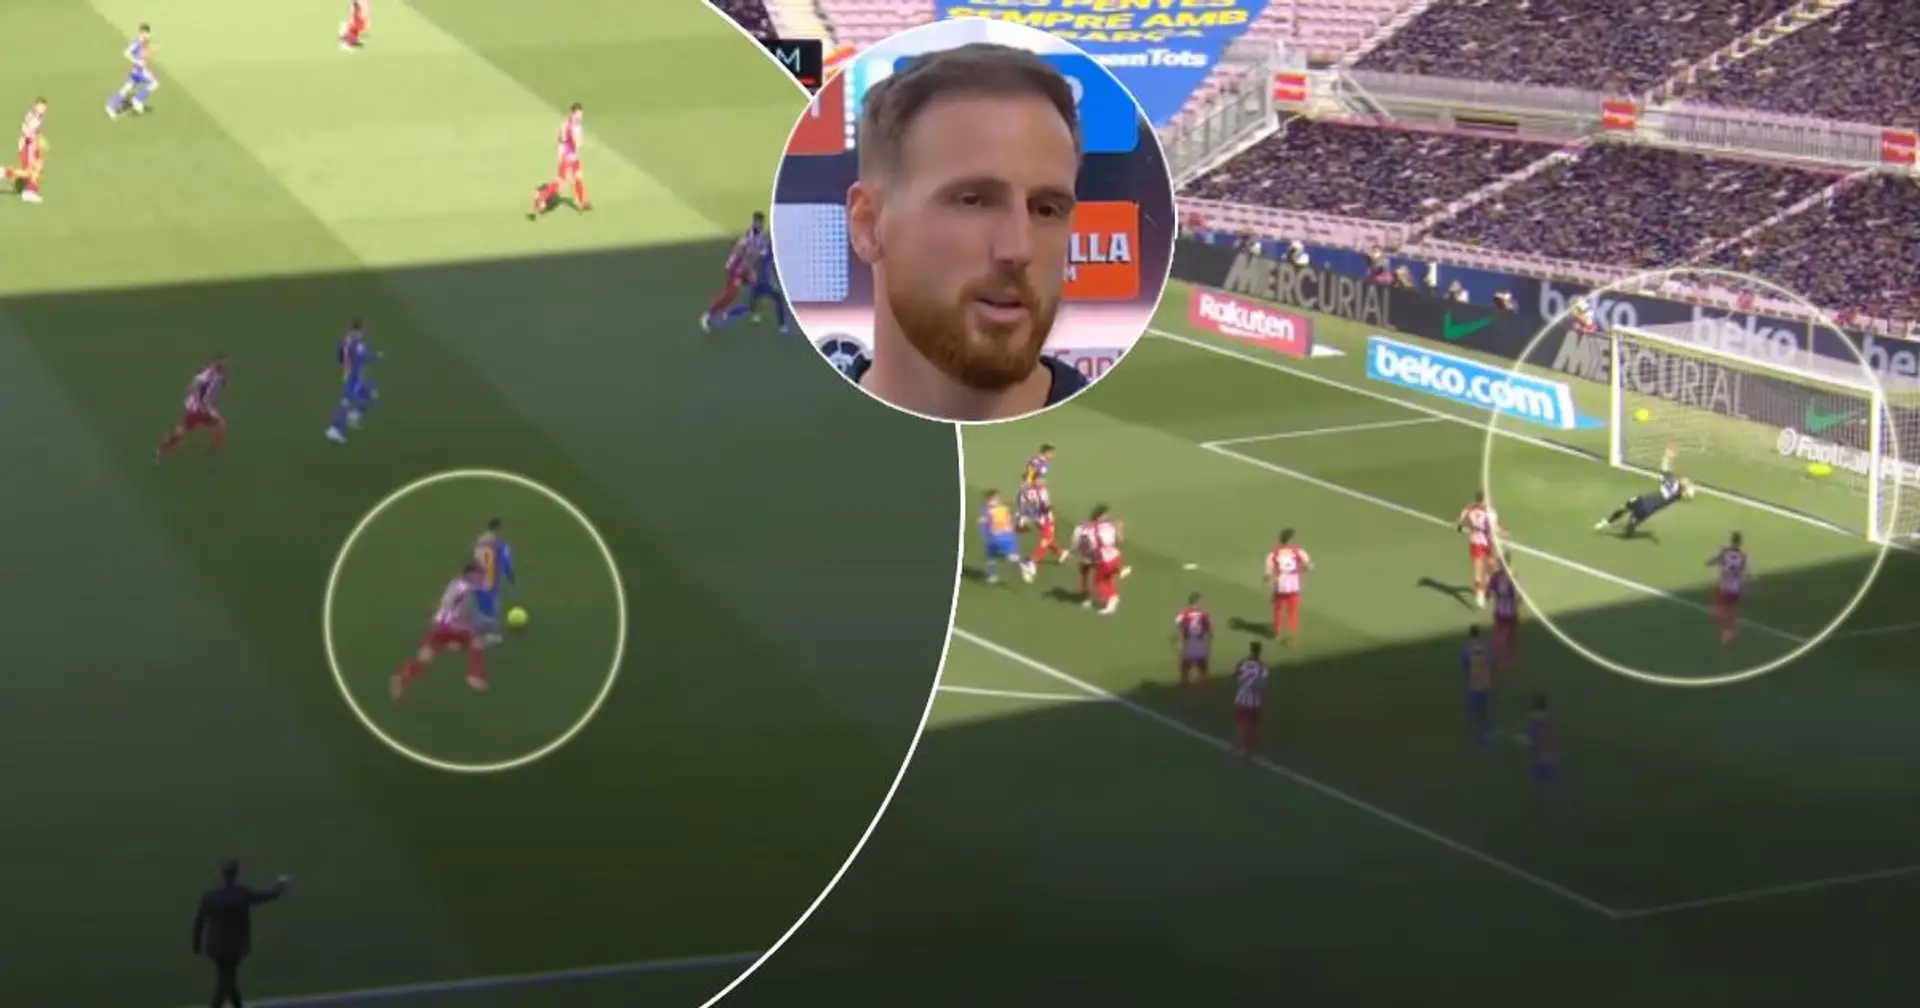 Gegen Leo Messi verhindert Oblak "fast eines der besten Tore, die wir je gesehen haben"